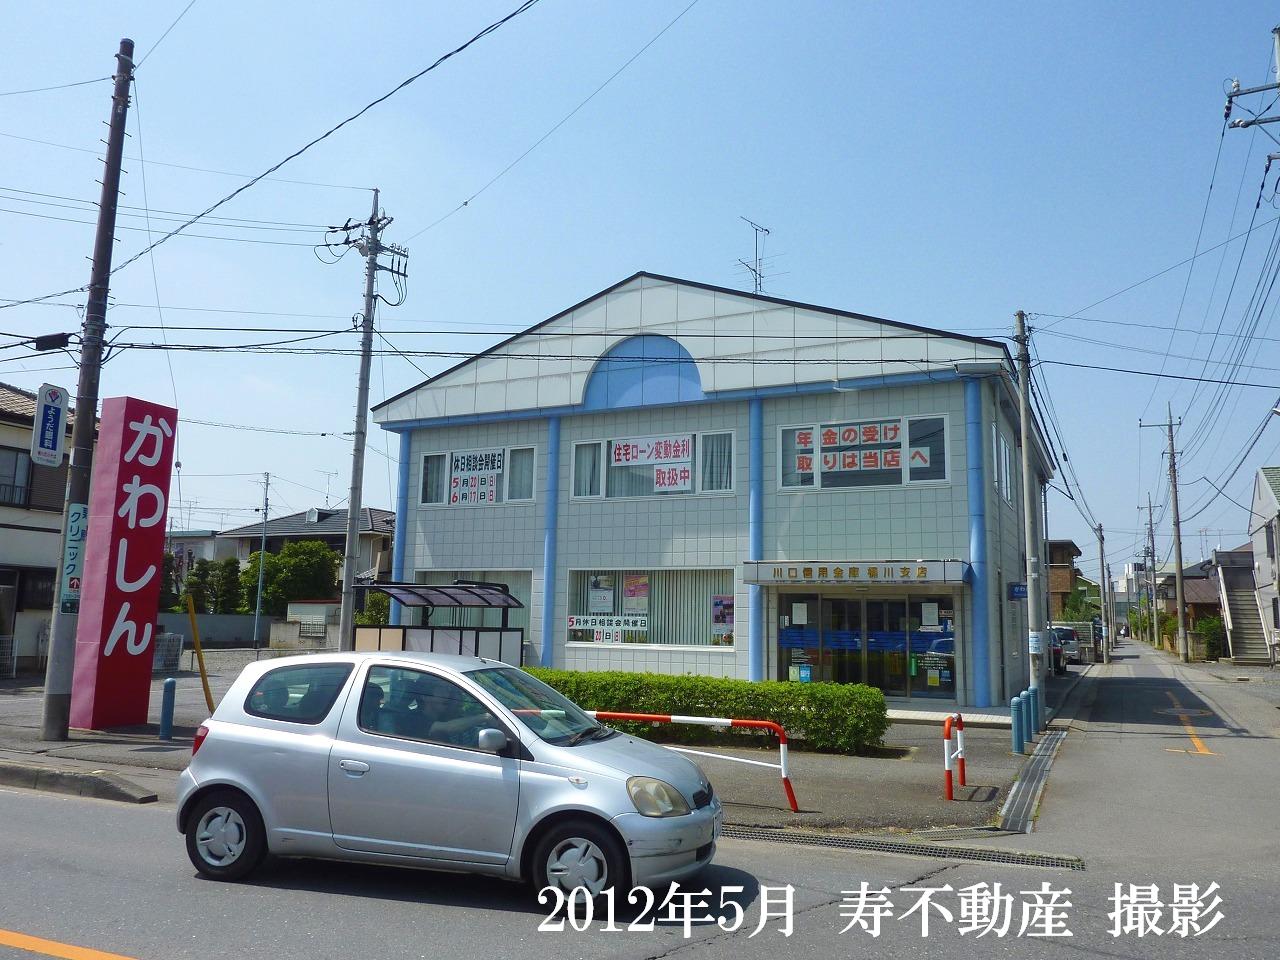 Bank. Kawaguchishin'yokinko Okegawa 190m to the branch (Bank)